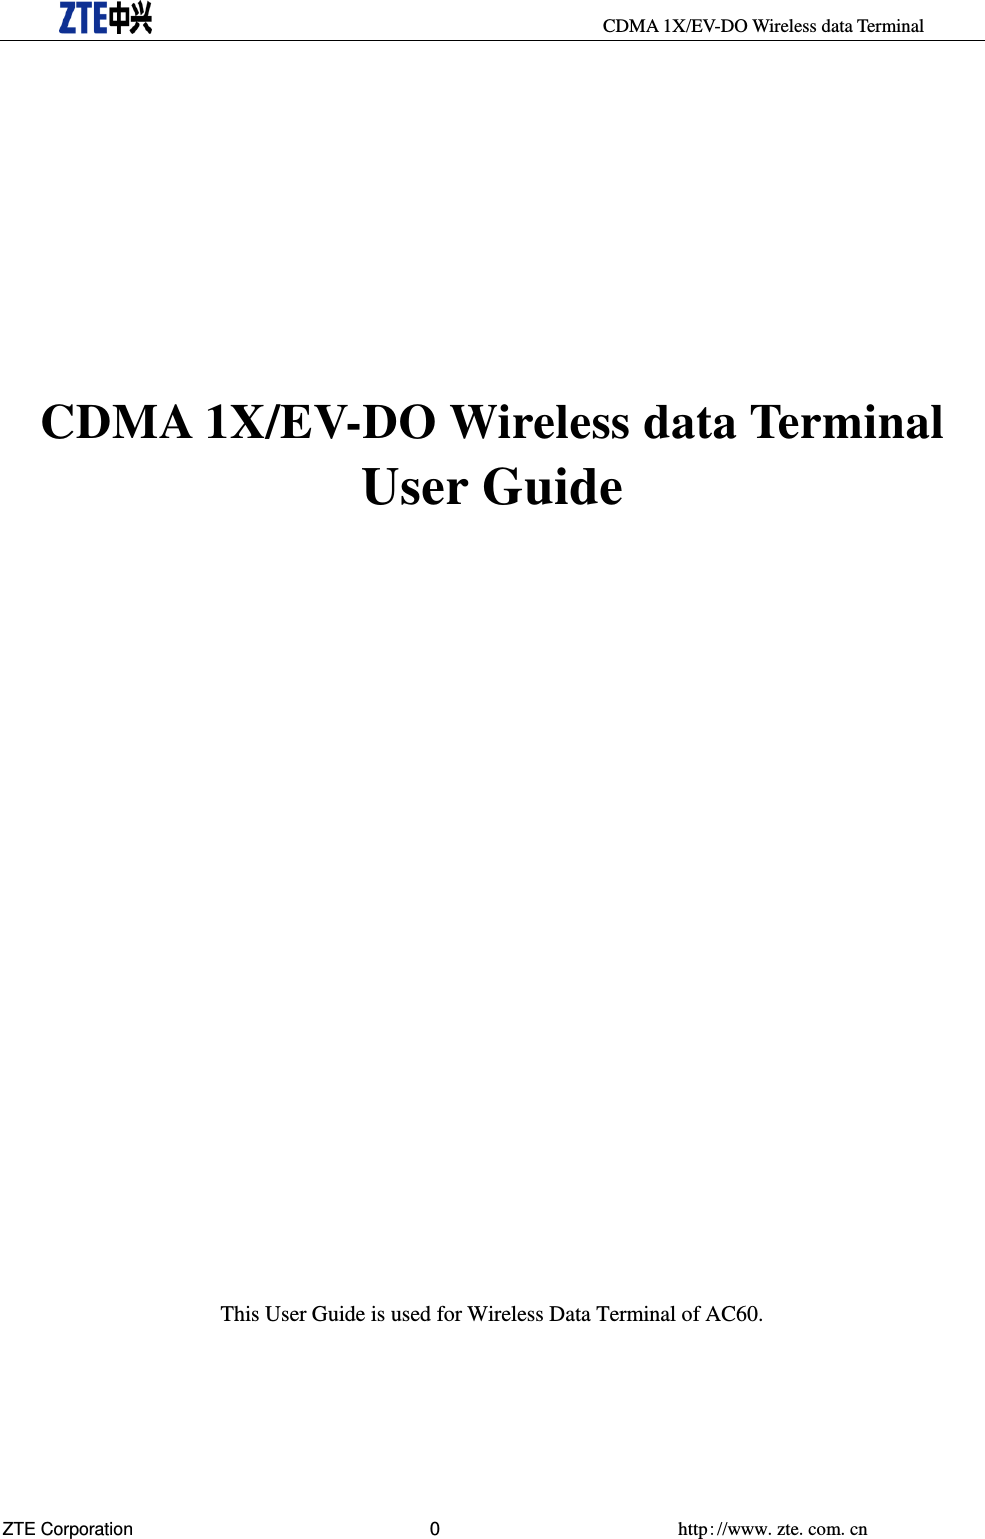     CDMA 1X/EV-DO Wireless data Terminal ZTE Corporation 0  http://www.zte.com.cn        CDMA 1X/EV-DO Wireless data Terminal User Guide                         This User Guide is used for Wireless Data Terminal of AC60. 